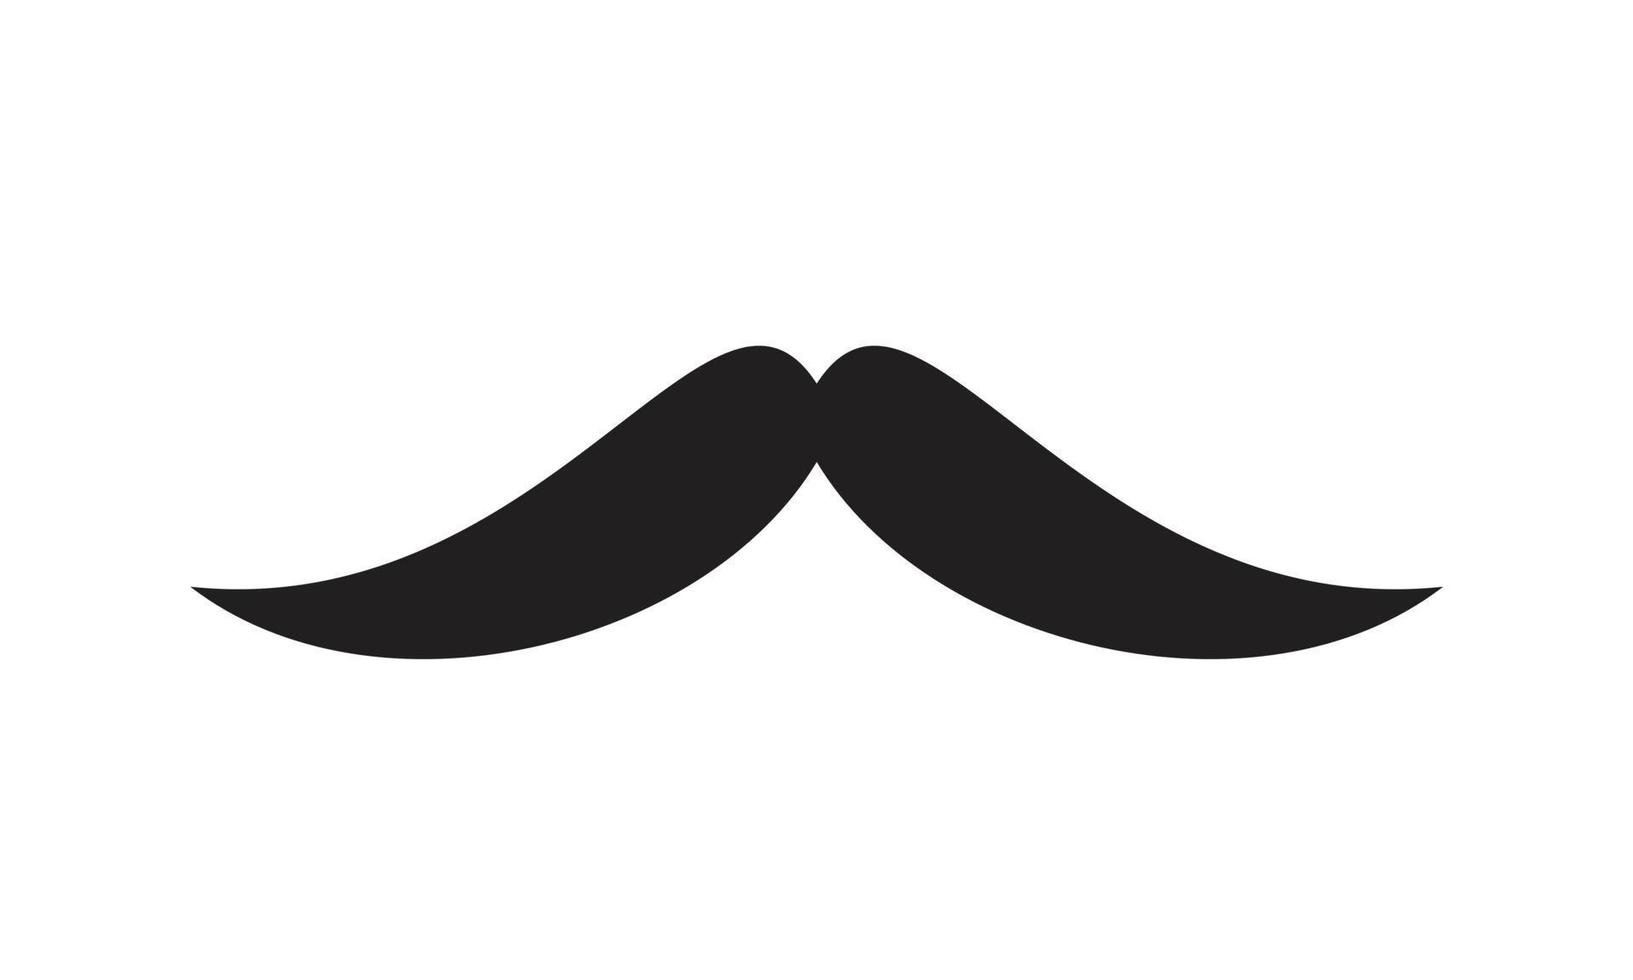 plantilla de icono de bigote de italia editable en color negro. Italia bigote icono símbolo plano vector ilustración para diseño gráfico y web.